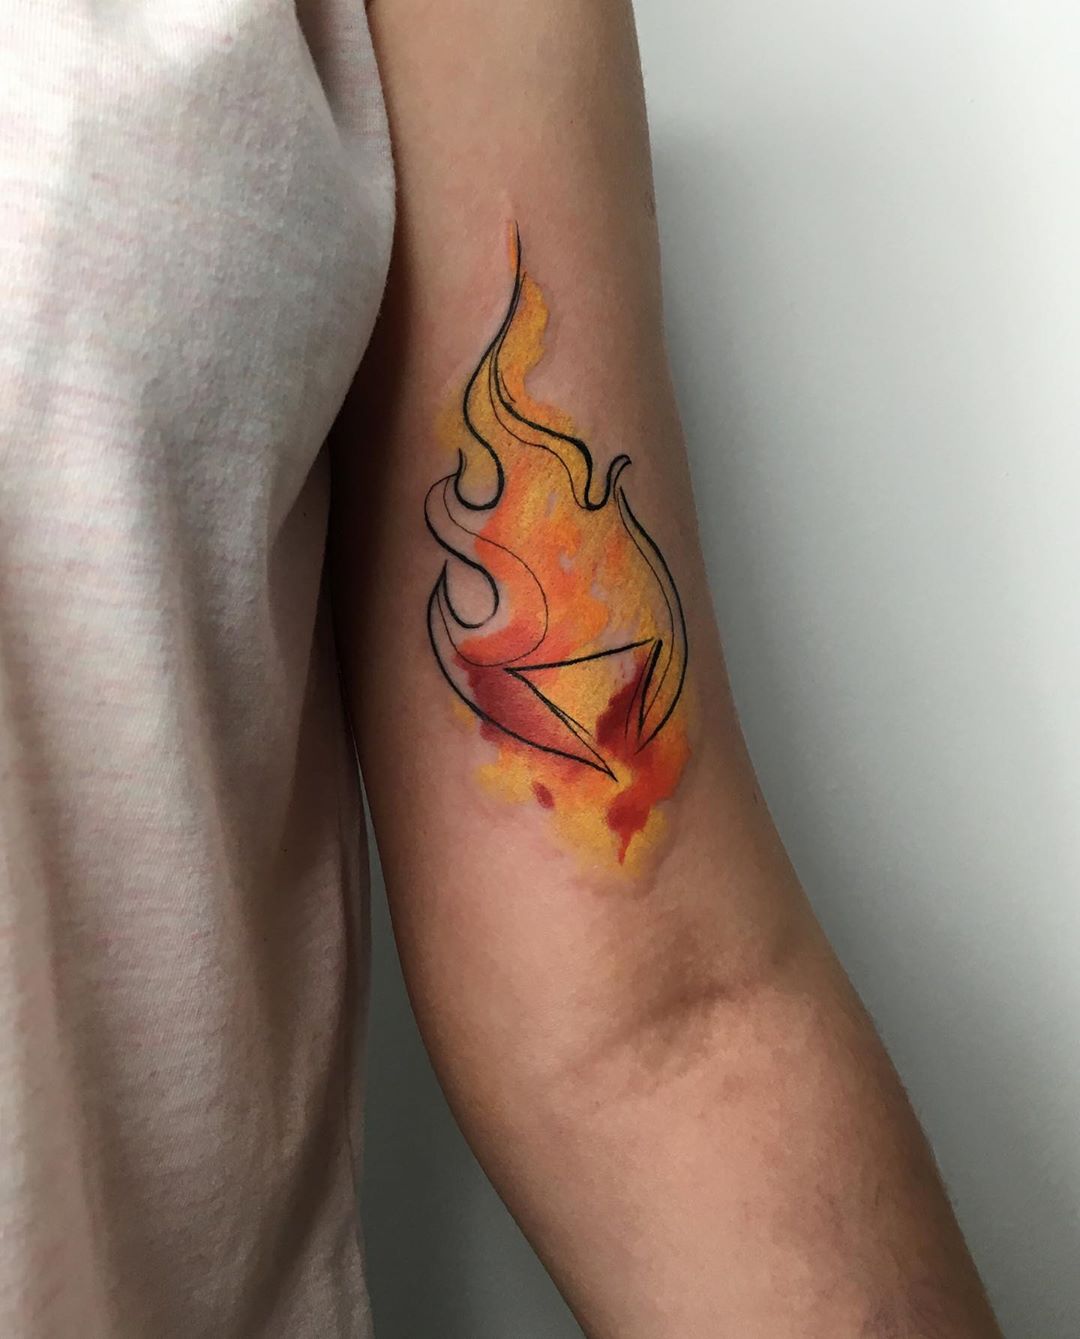 Significado da tatuagem de fogo